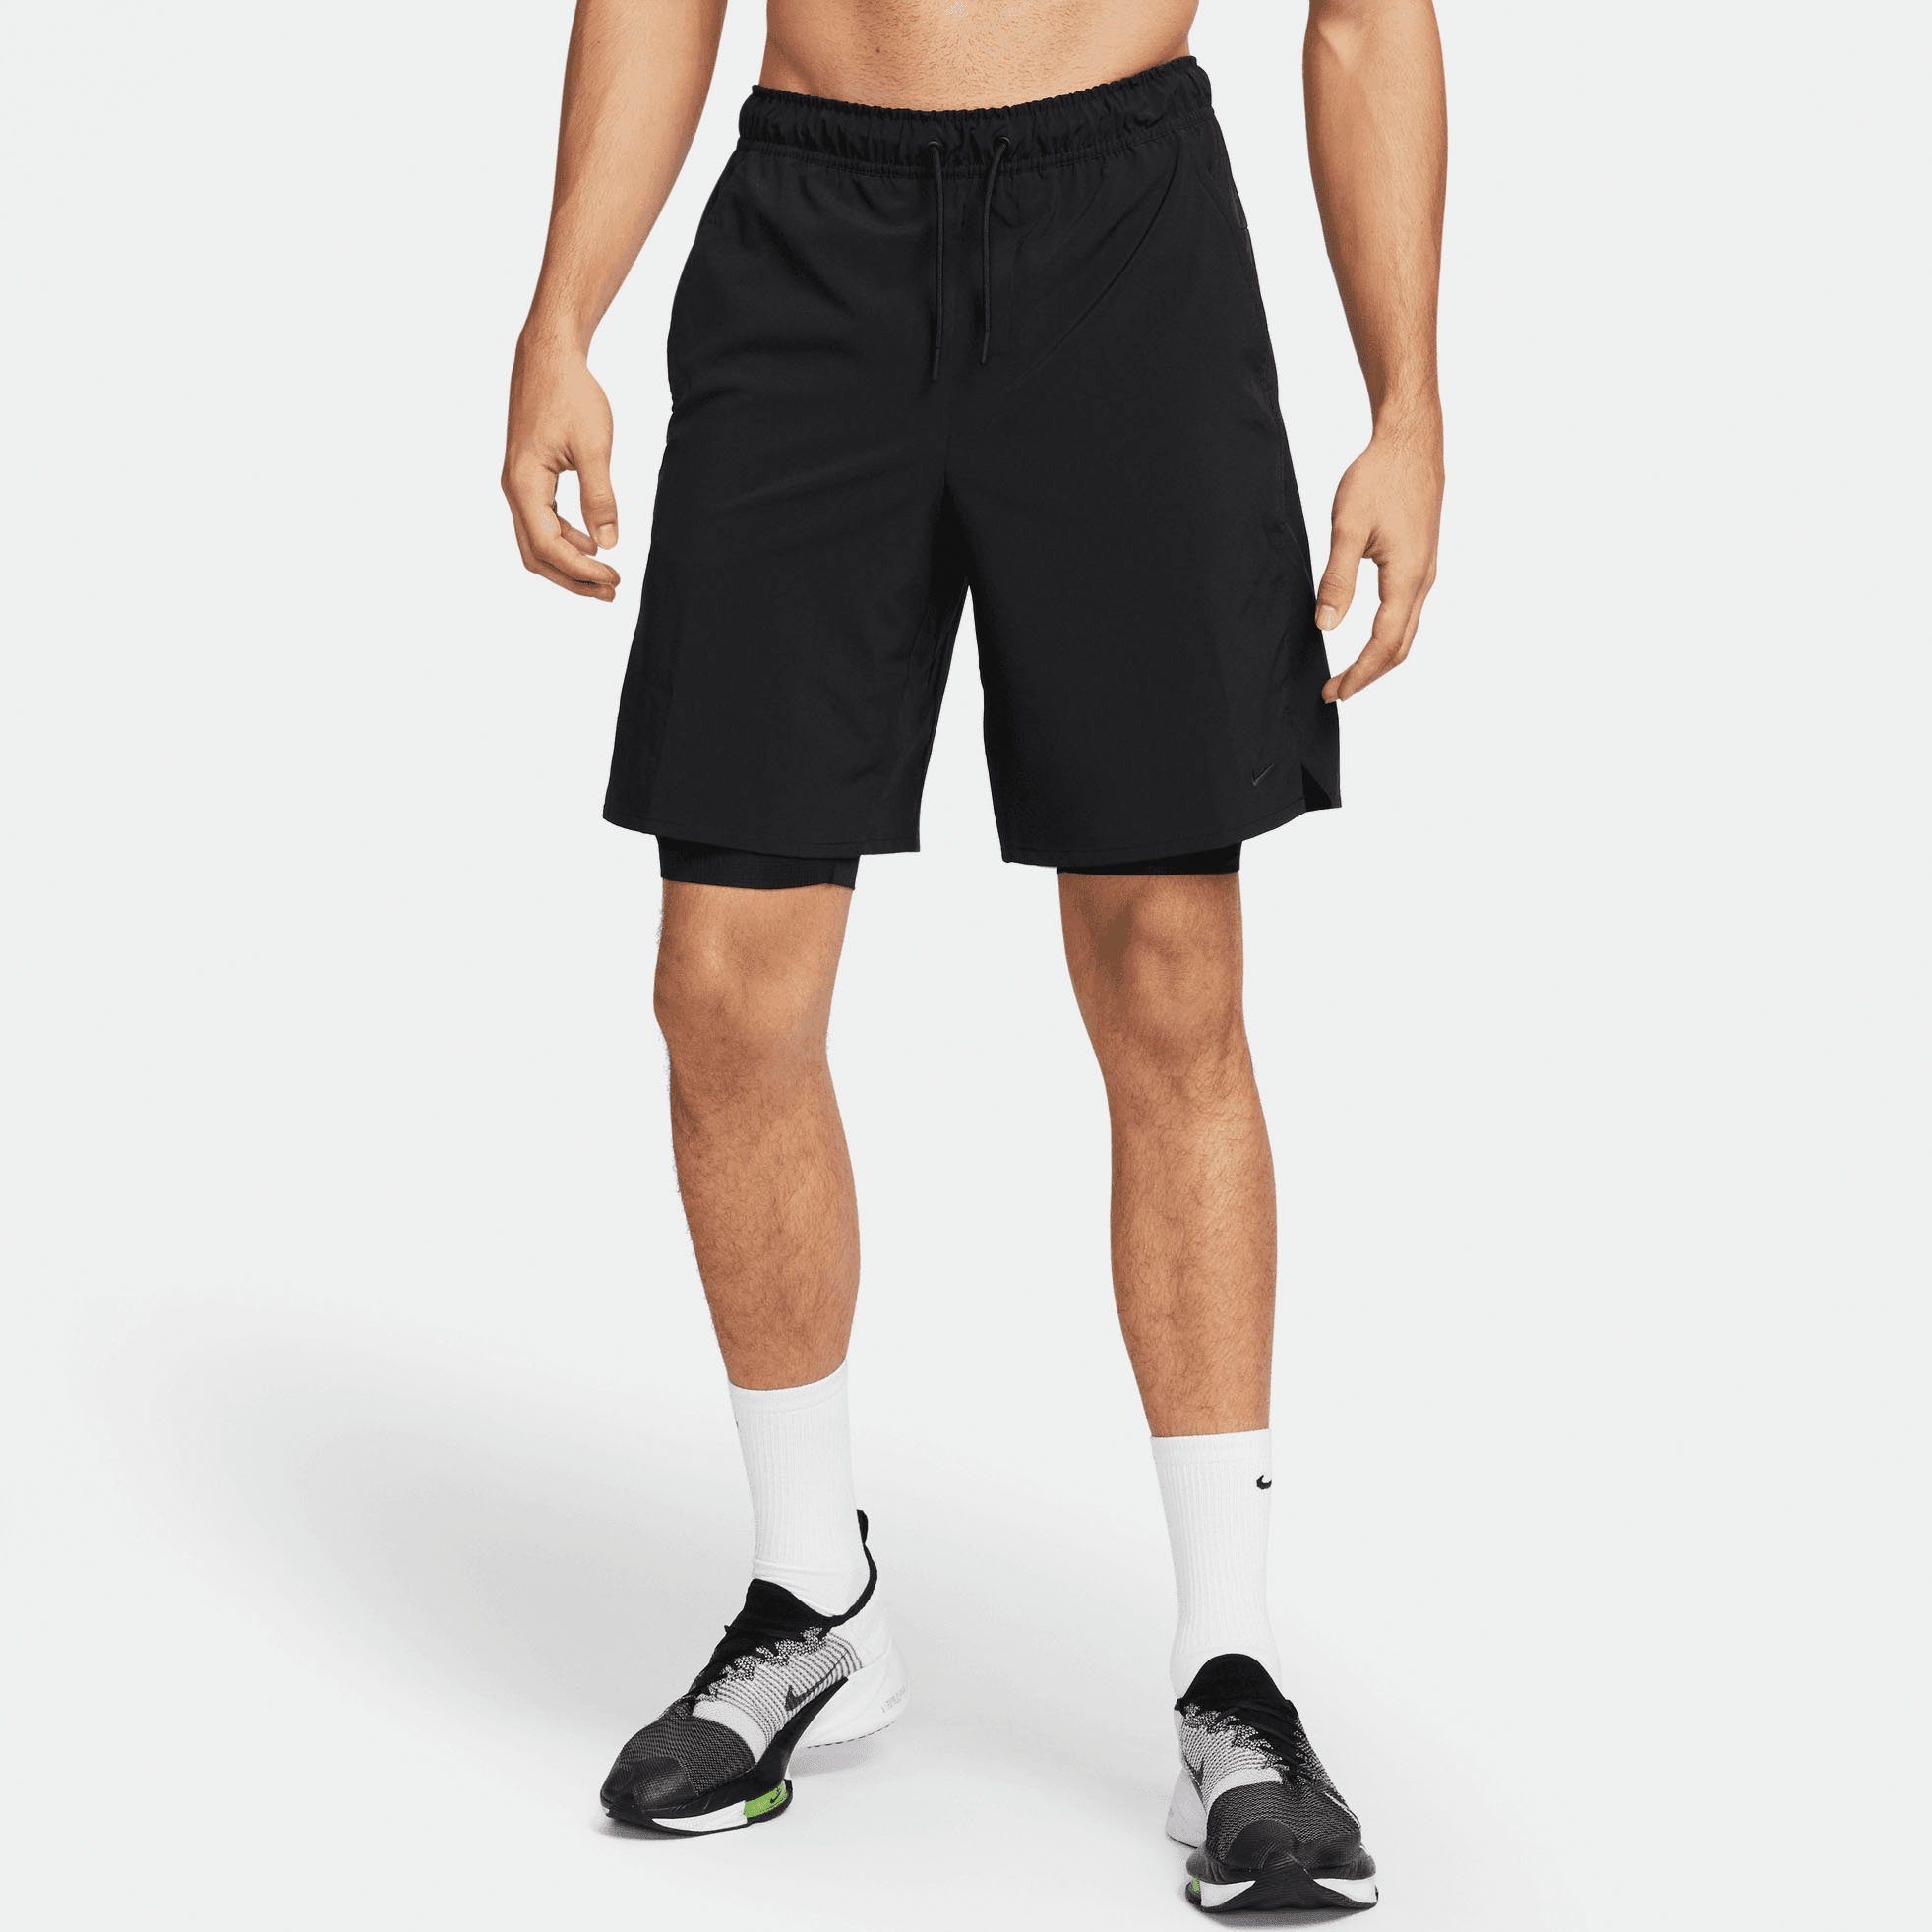 Kurze Nike Baumwolle Hosen online kaufen | OTTO